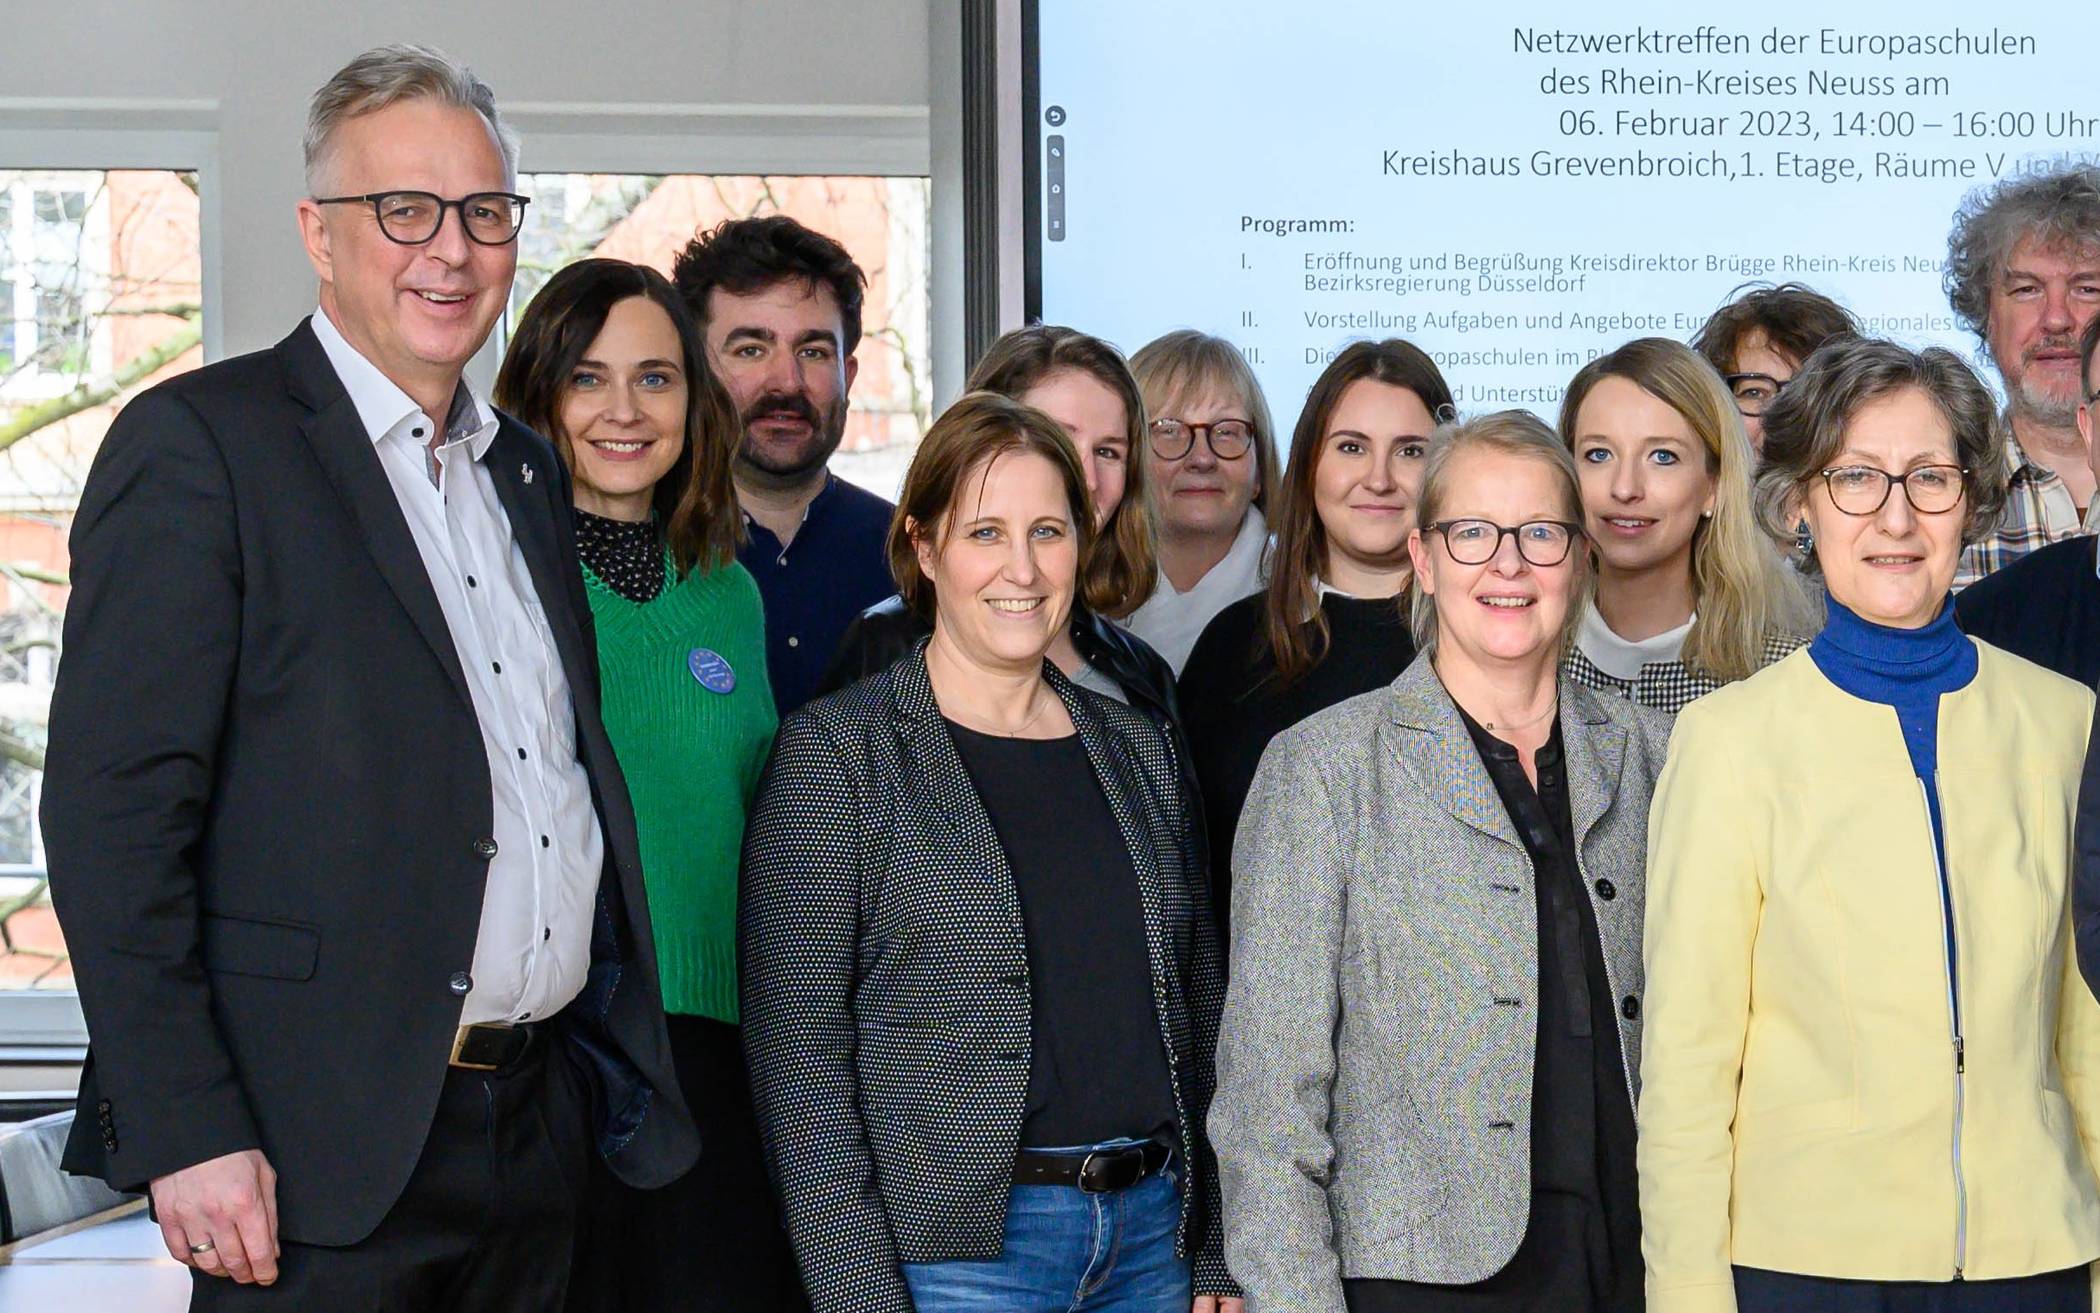 Kreisdirektor Dirk Brügge (links) begrüßte die Teilnehmer des ersten Netzwerktreffens der Europaschulen im Rhein-Kreis in Grevenbroich.